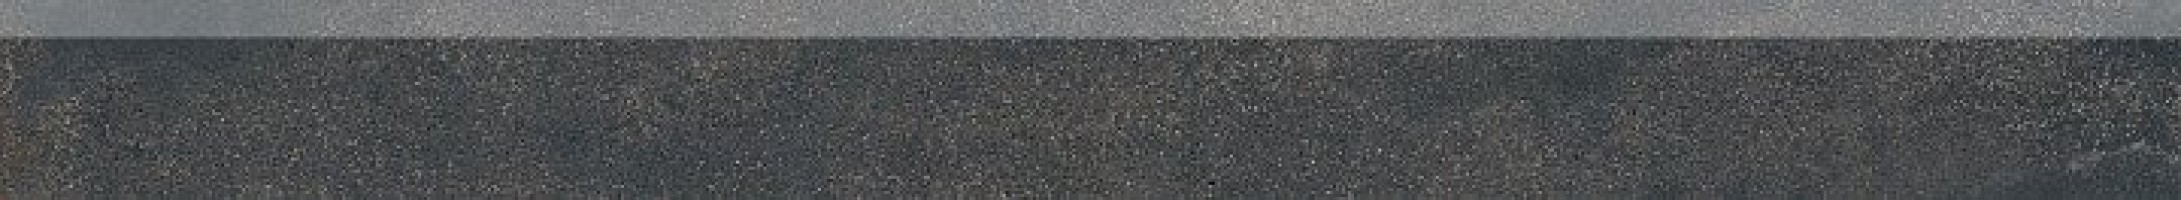 Плинтус ABK Ceramiche Blend Concrete Battiscopa Iron Ret 5.5x60 PF60006967